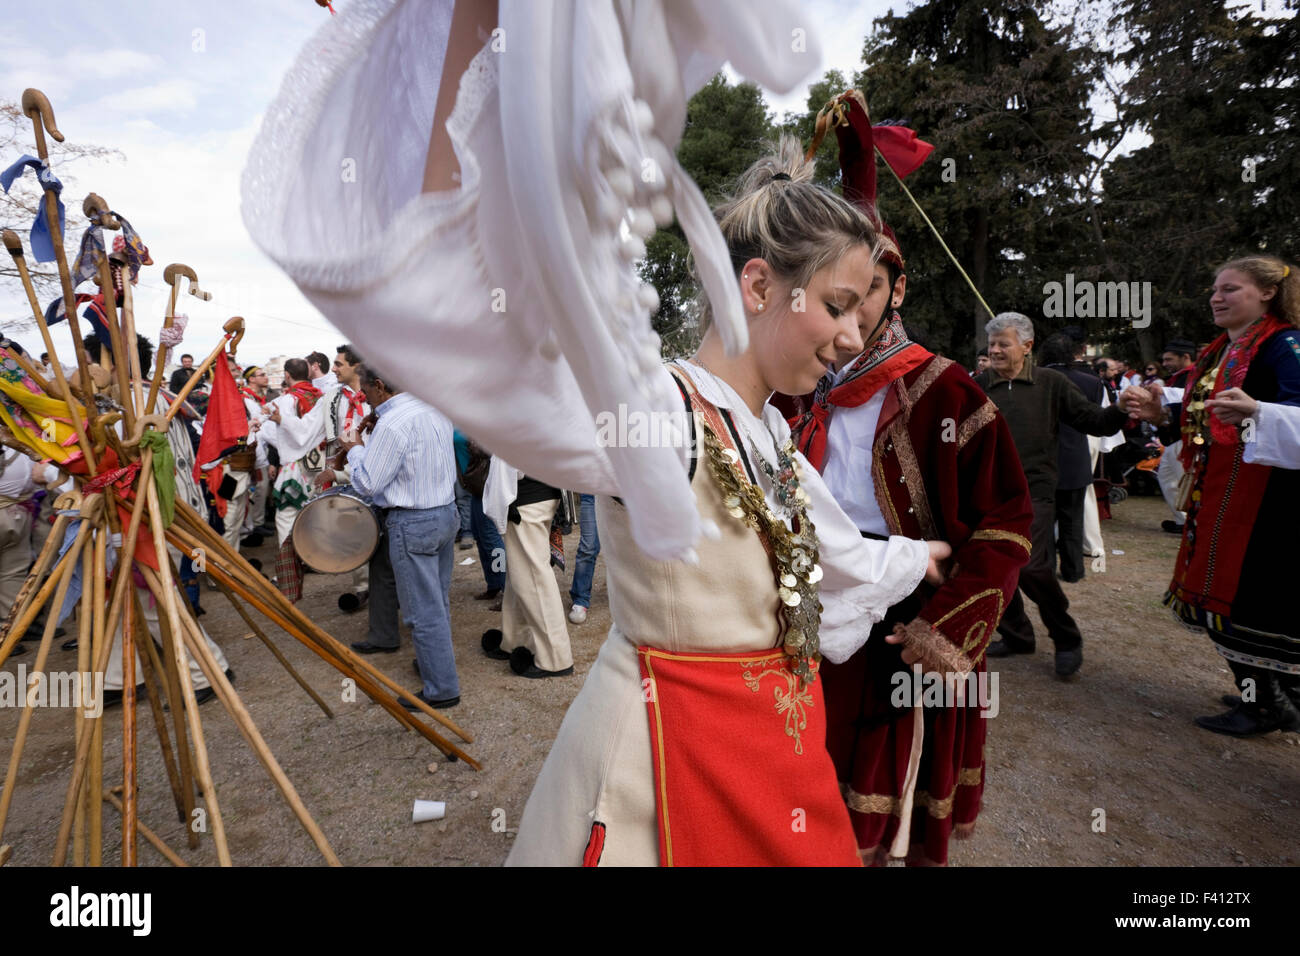 Femmina vlach danze intorno ad una forma piramidale di stack decorate dal naso a gancio pastore aste all'annuale Vlach nozze di Tebe. Foto Stock